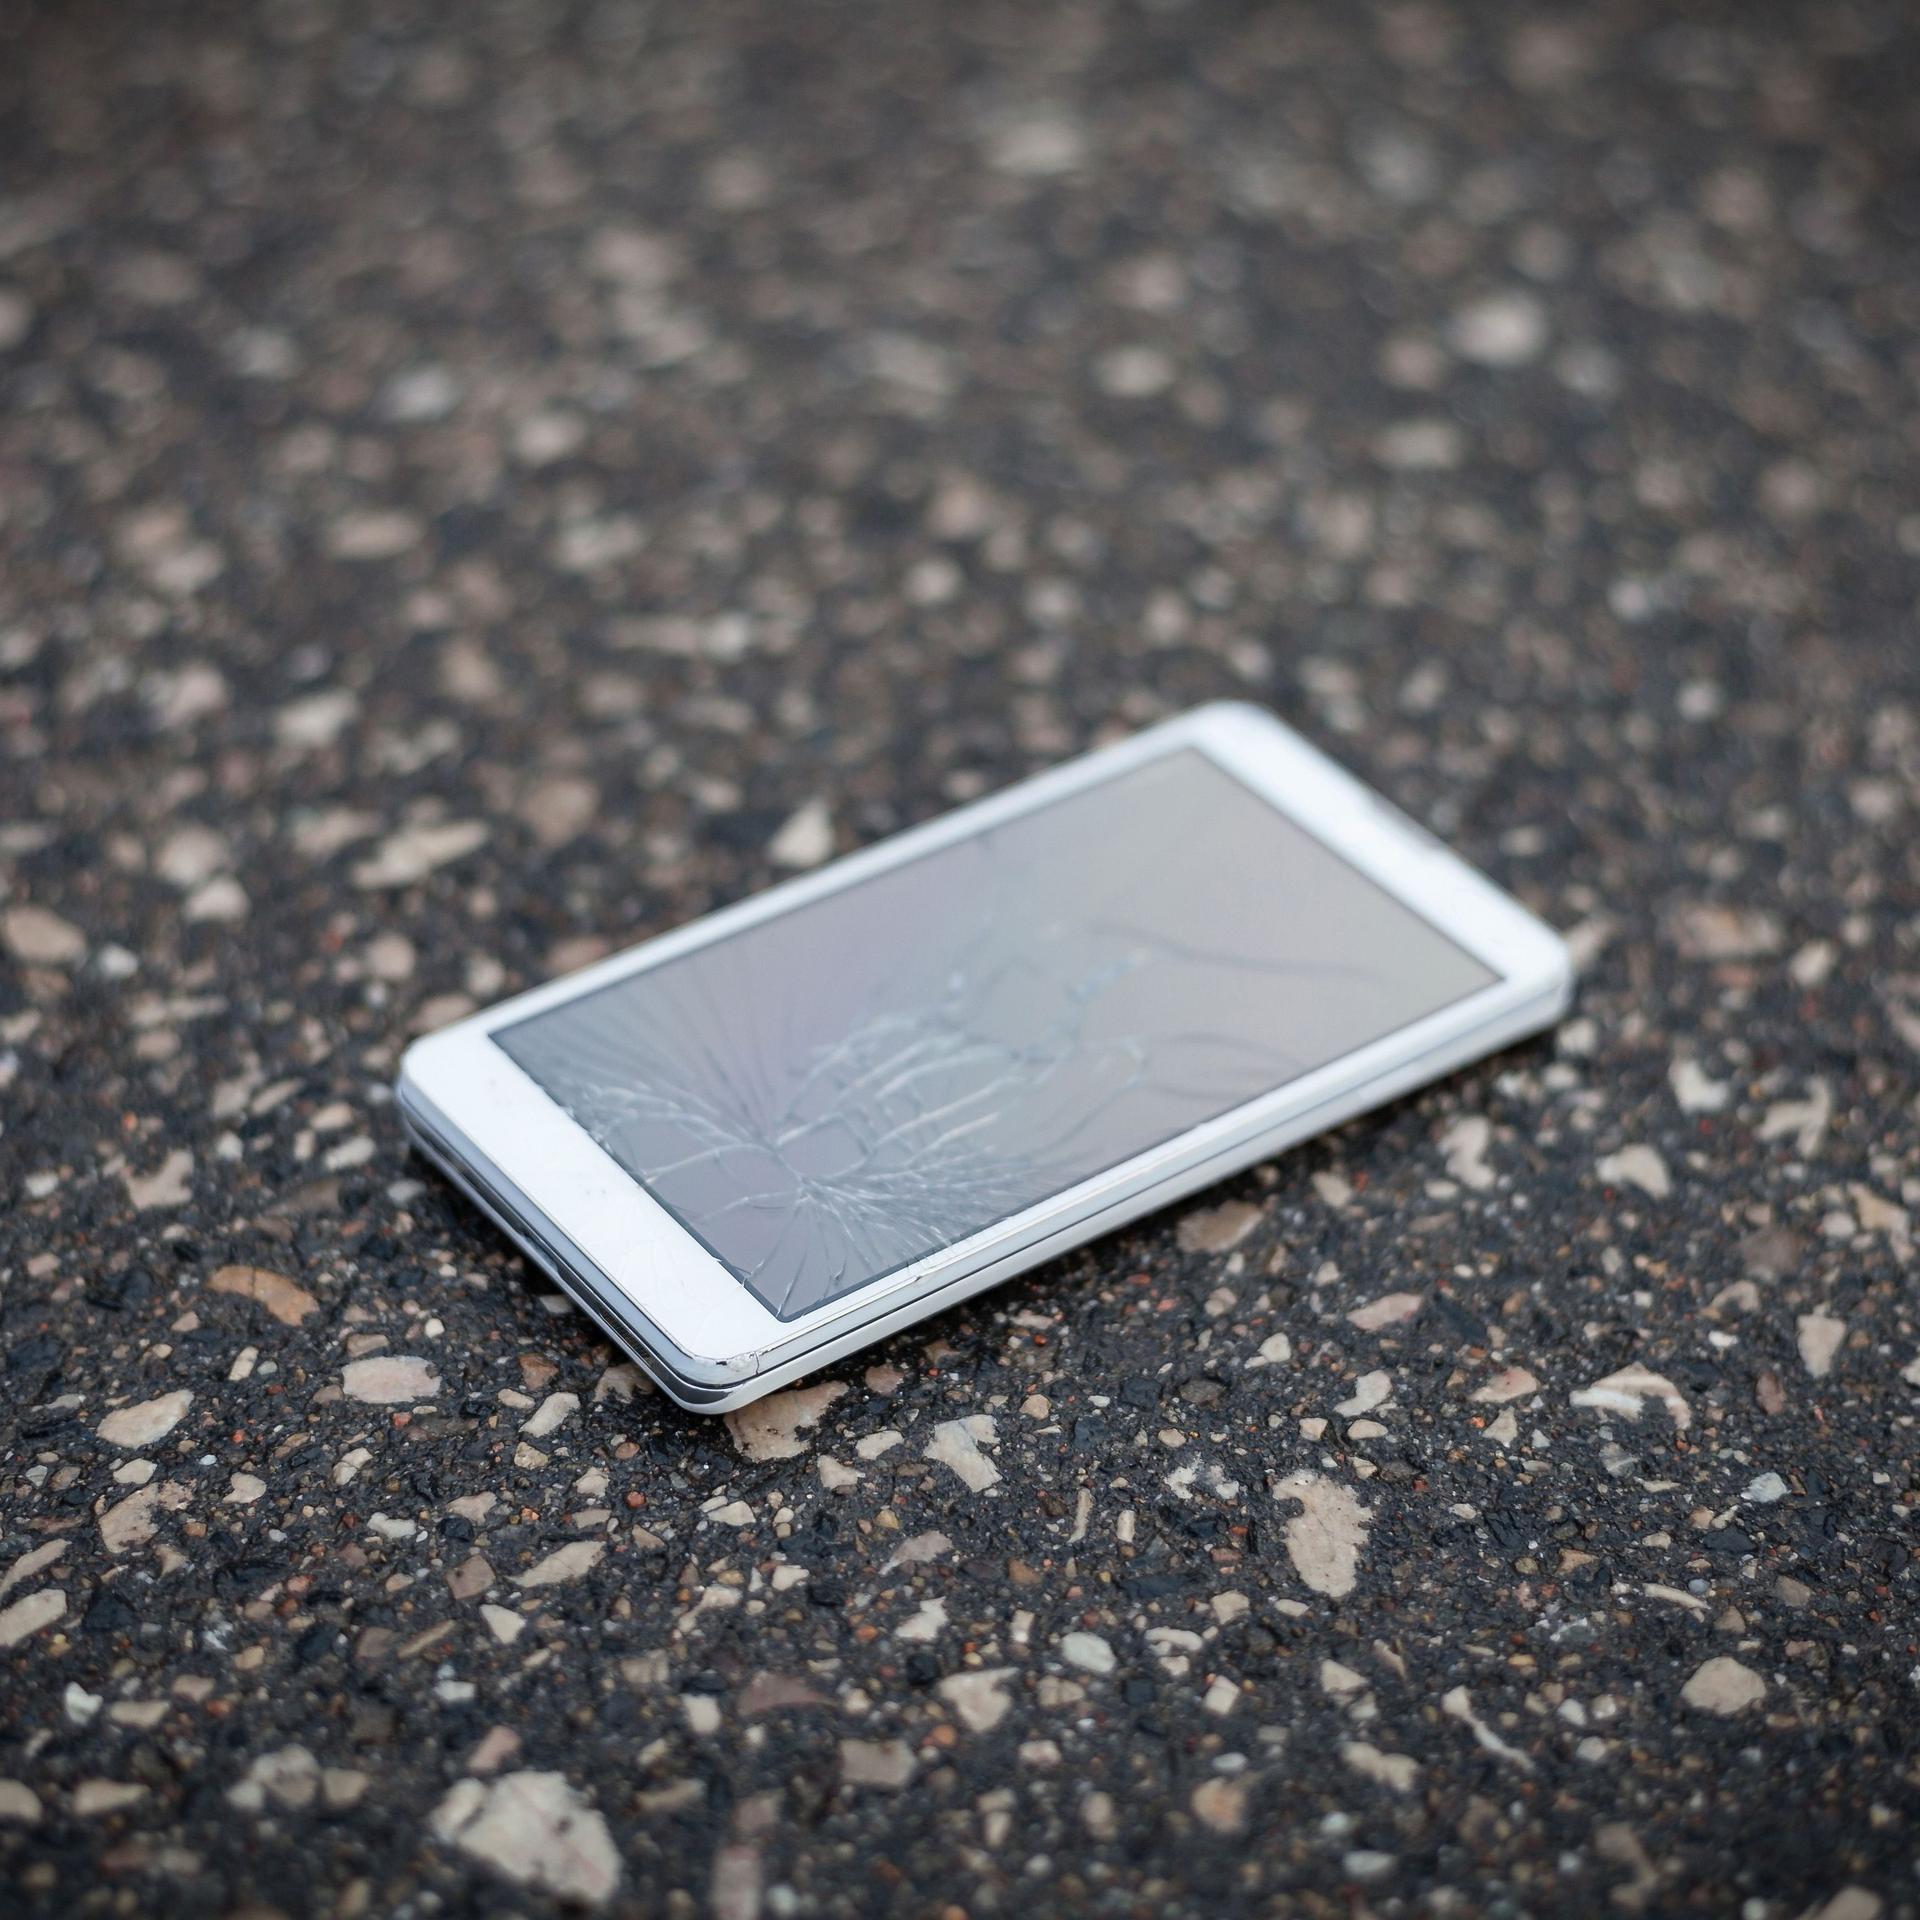 Ein weißes Smartphone liegt auf Betonboden. Die Scheibe ist gesplittert.